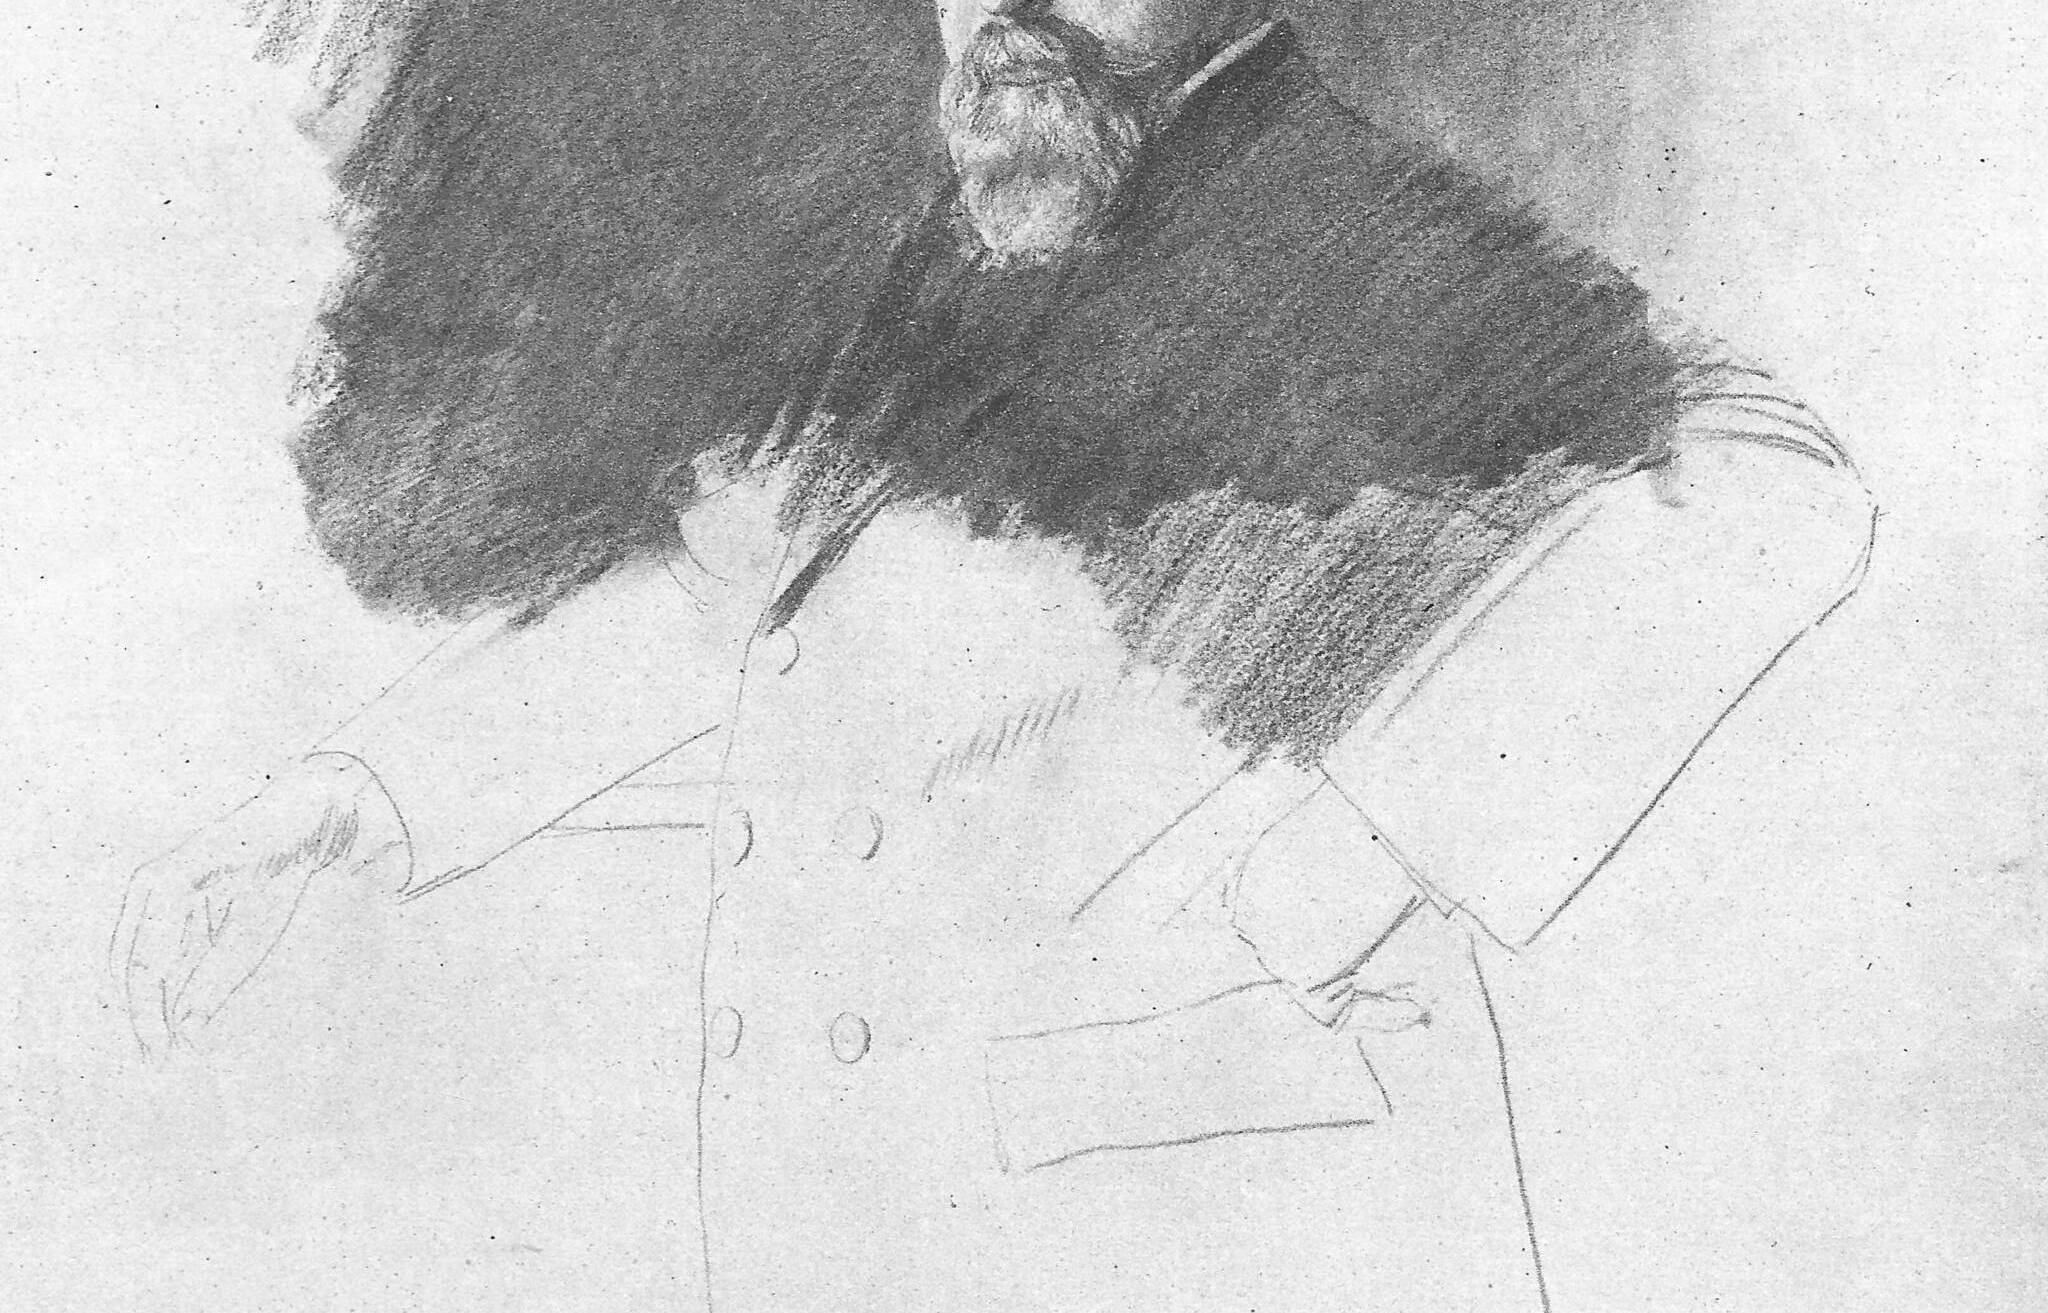  Arthur Schnitzler, Porträtradierung von Ferdinand Schmutzer um 1912. 